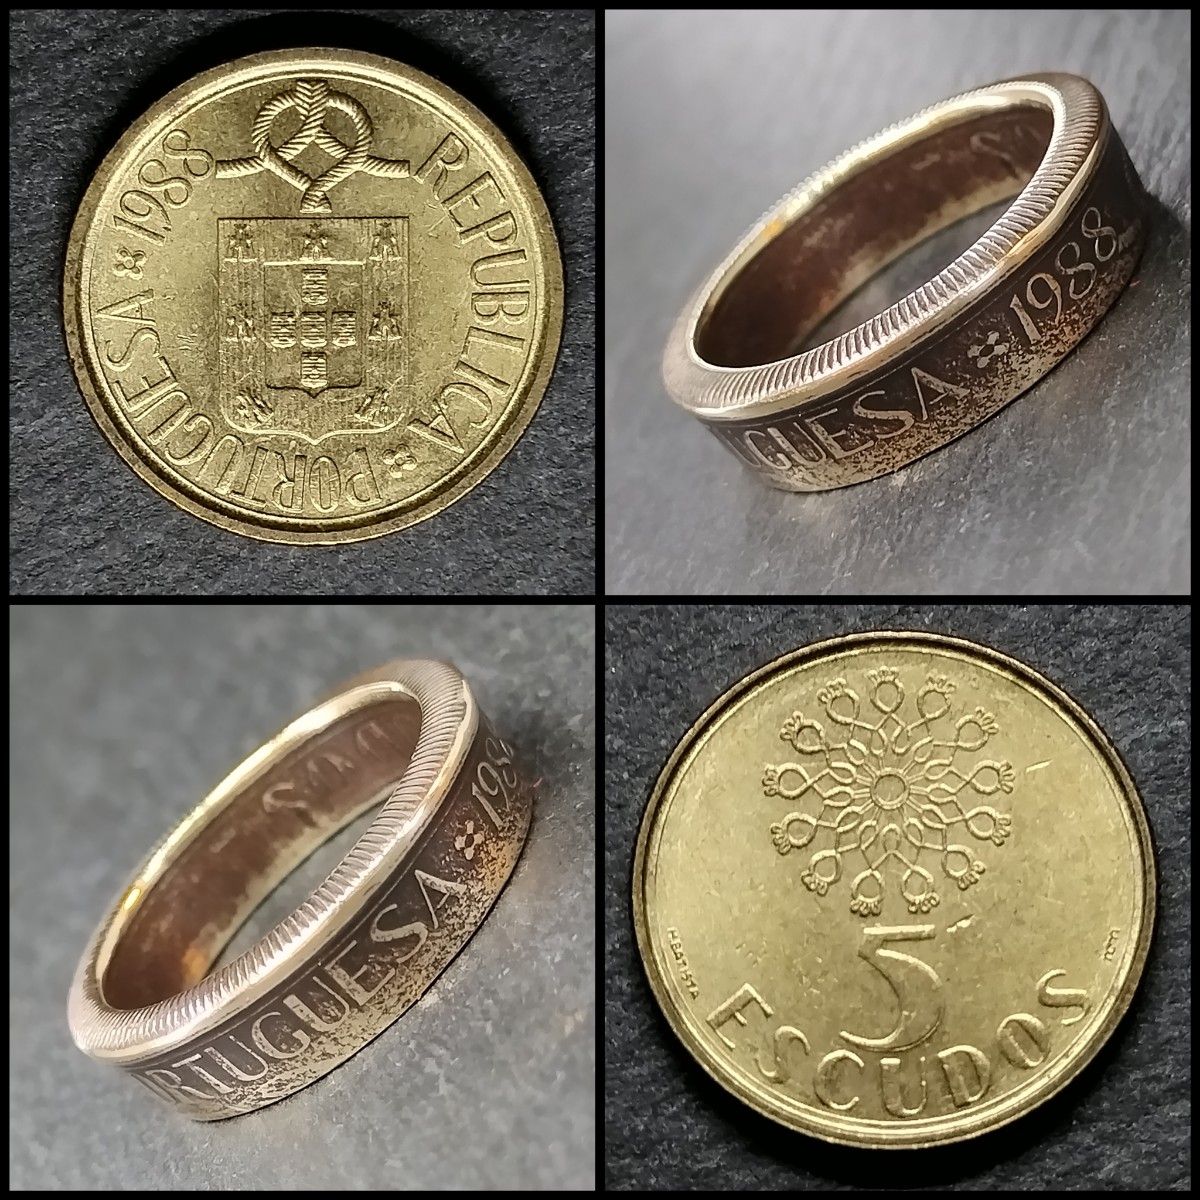 1988年 ポルトガル共和国 5エスクード硬貨 ハンドメイドコインリング 12号 ニッケル真鍮 ジャーマンシルバー